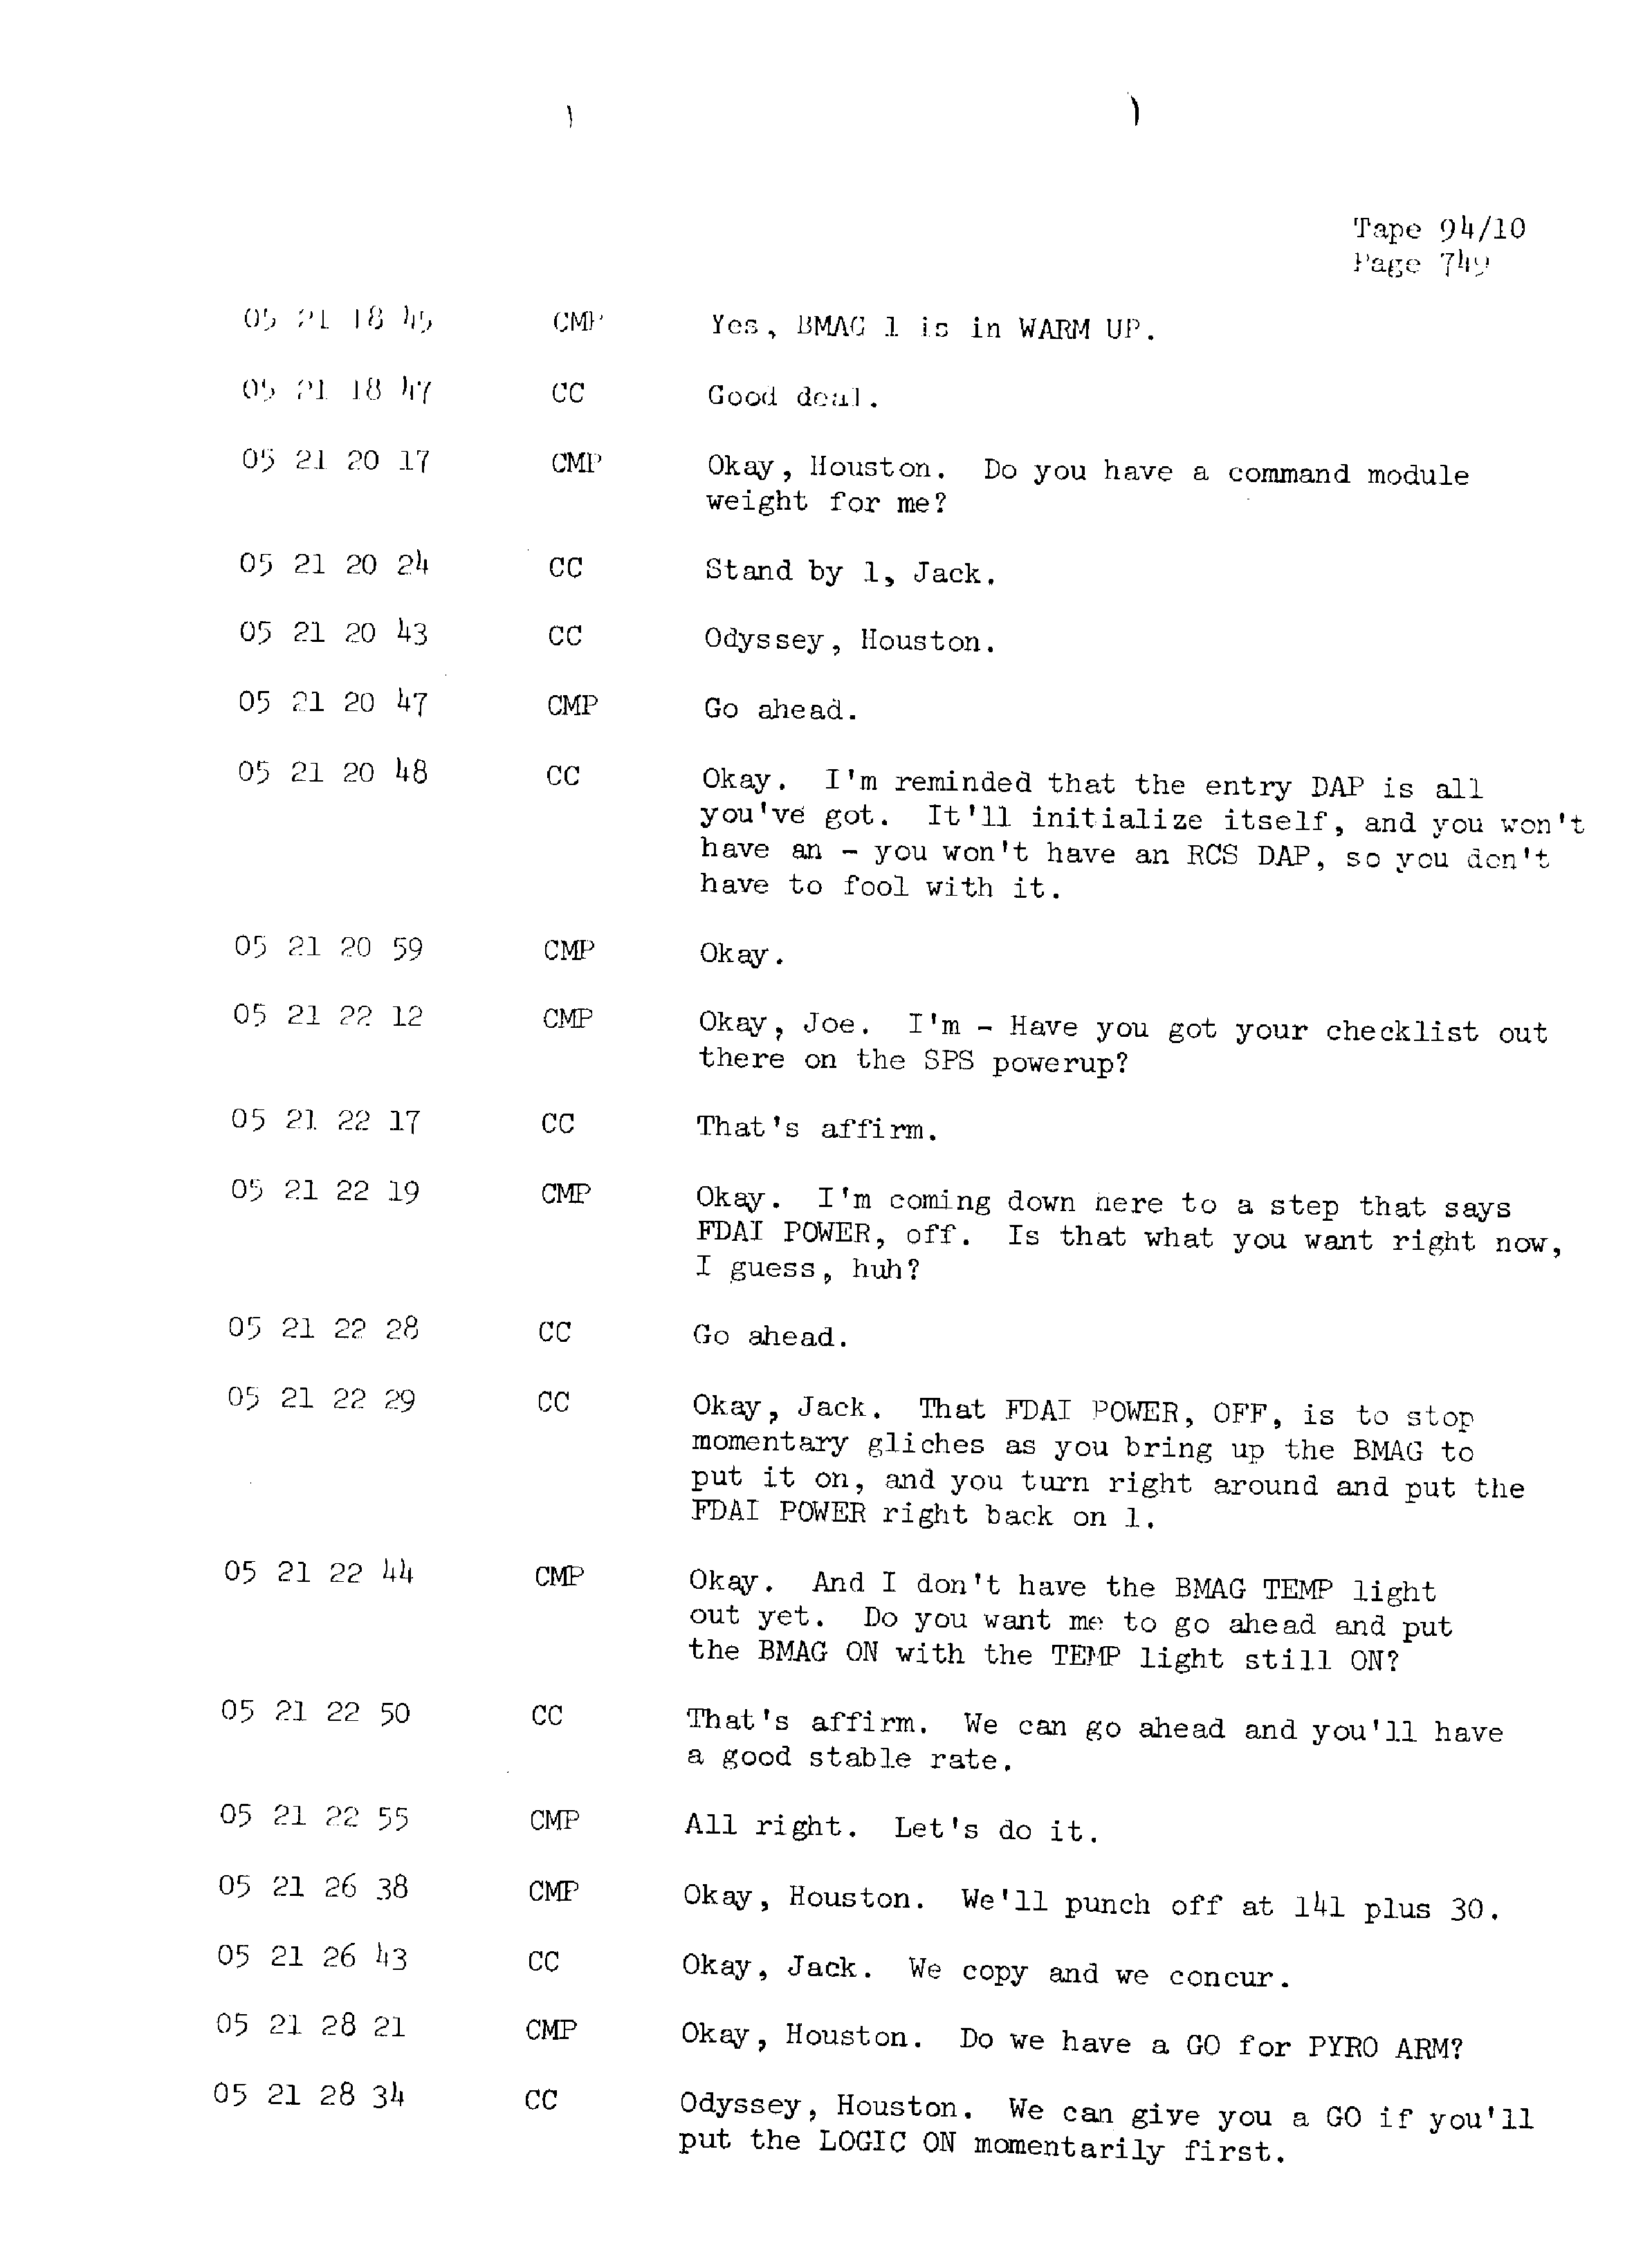 Page 756 of Apollo 13’s original transcript